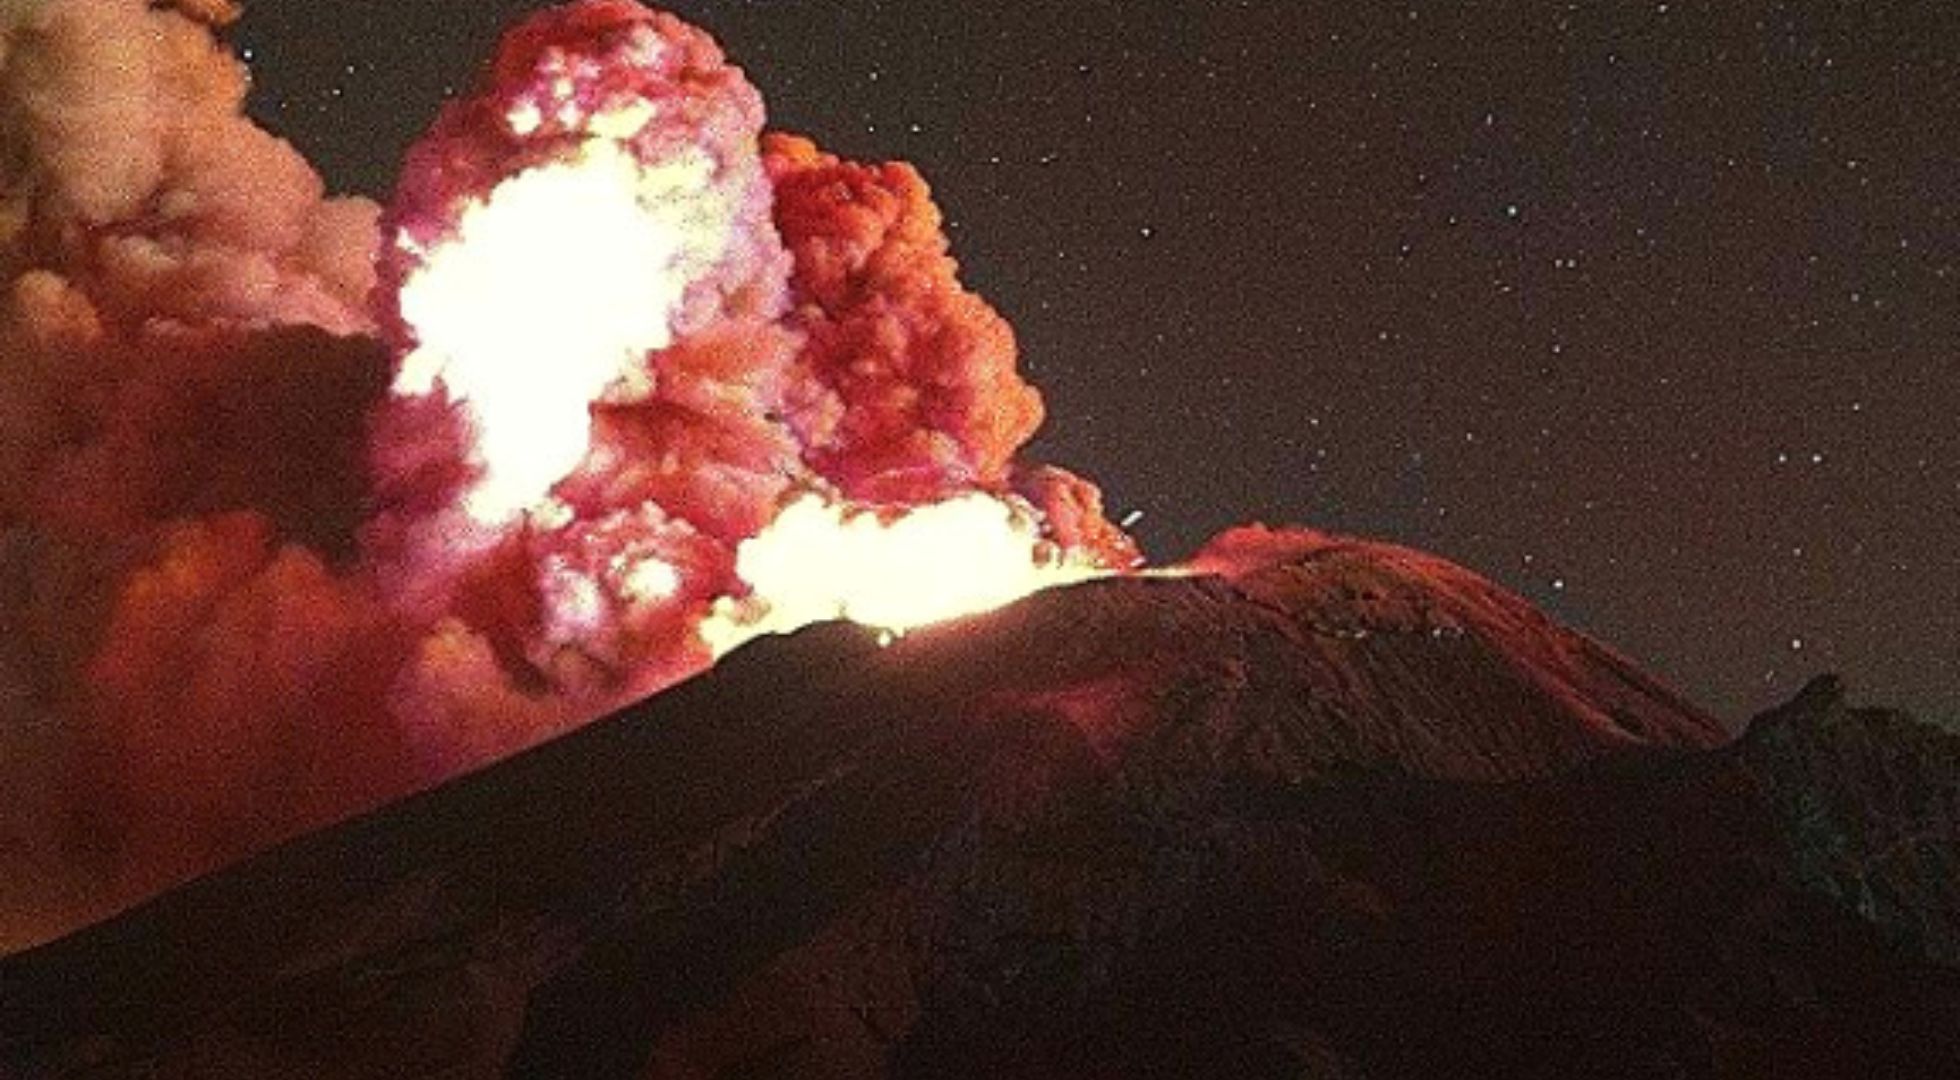 Volcán Popocatépetl hoy 30 de mayo: se detectó una explosión menor con emisión de ceniza